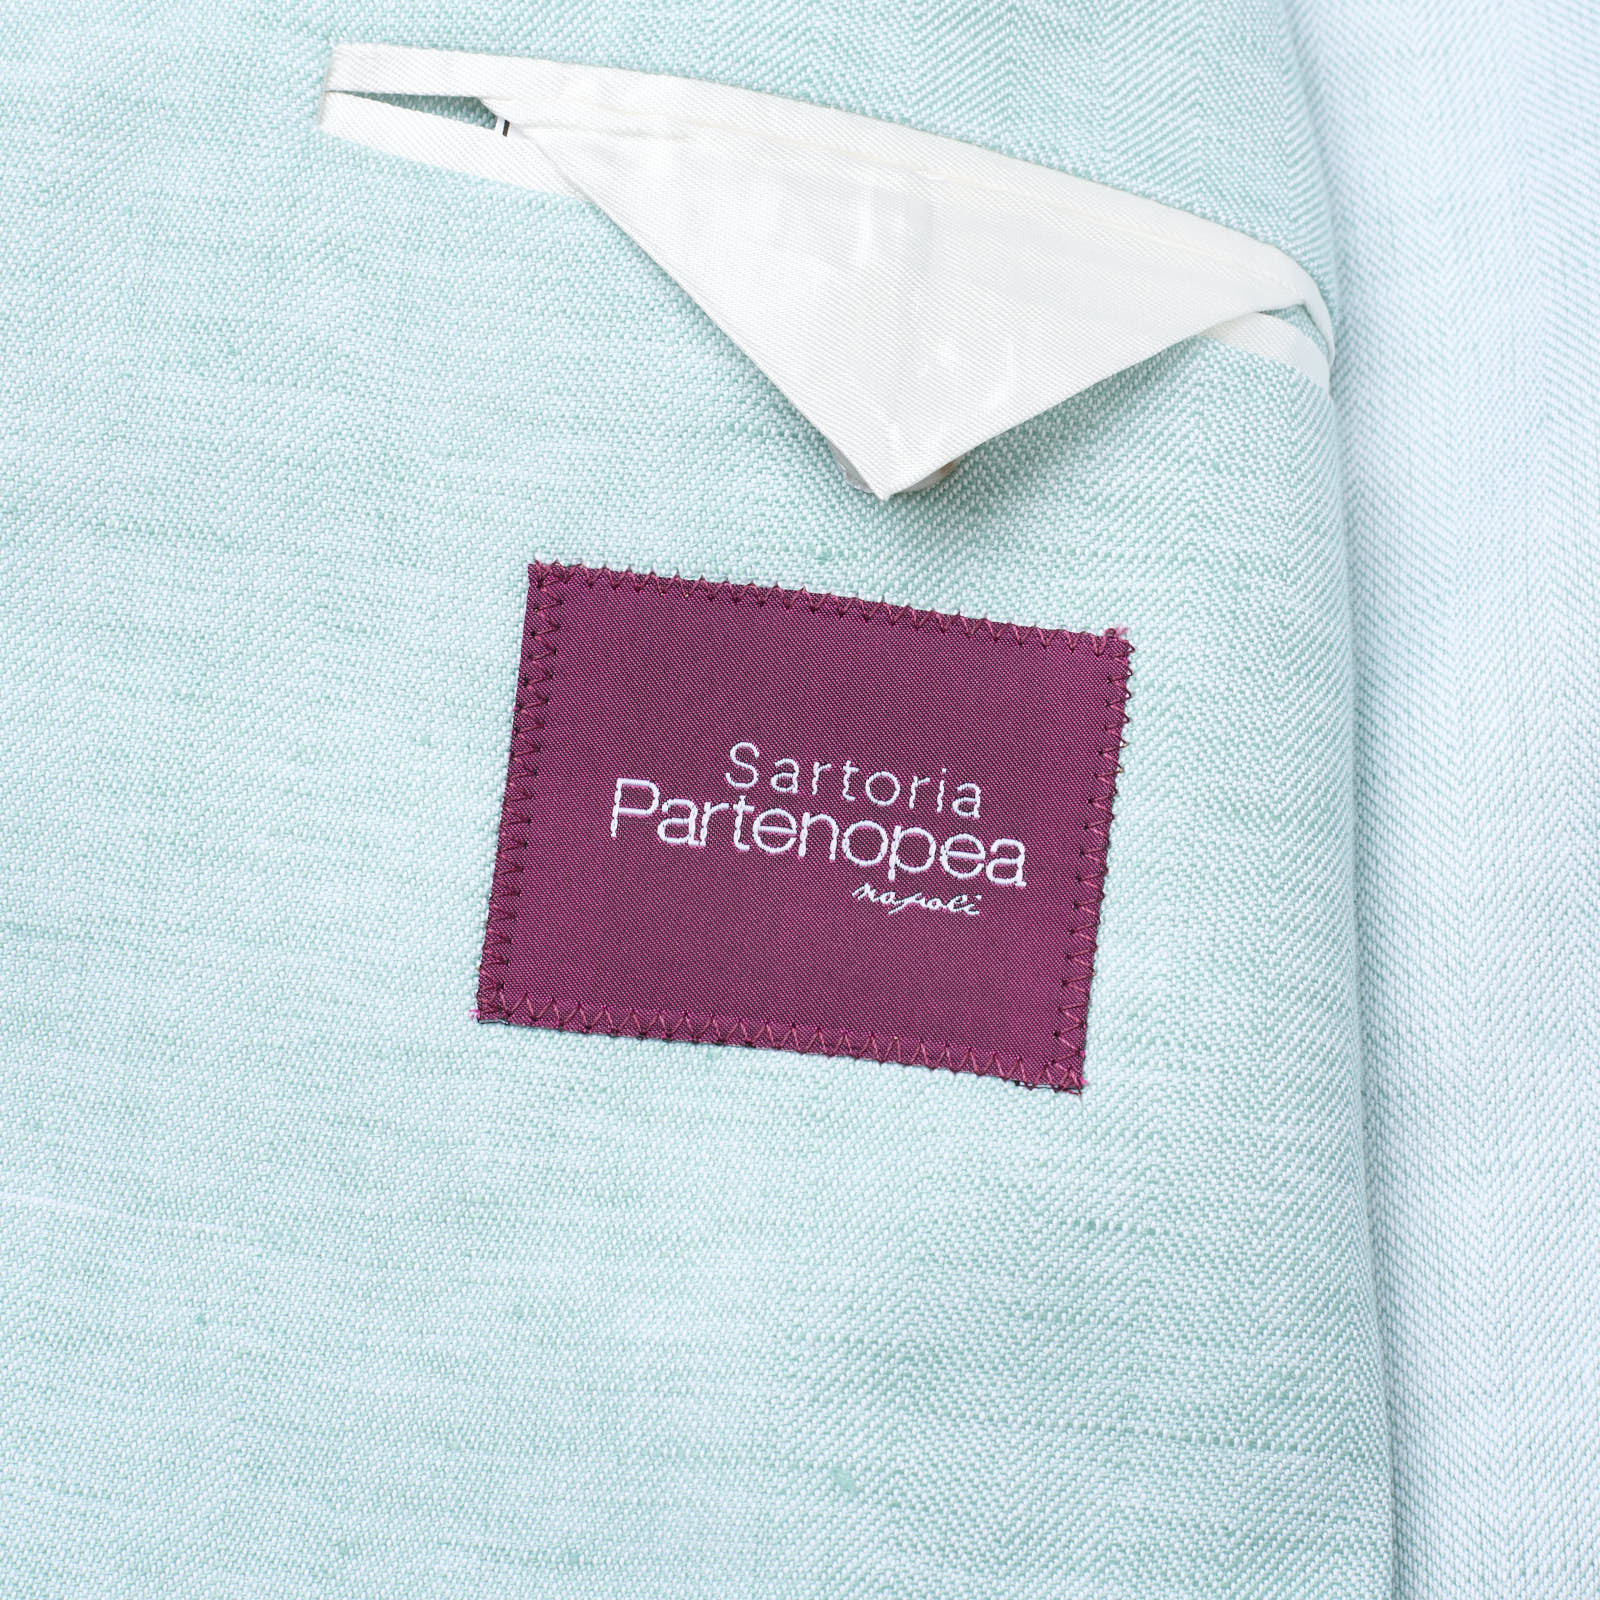 SARTORIA PARTENOPEA Mint Color Cotton-Linen Unlined Jacket  NEW  Current Model